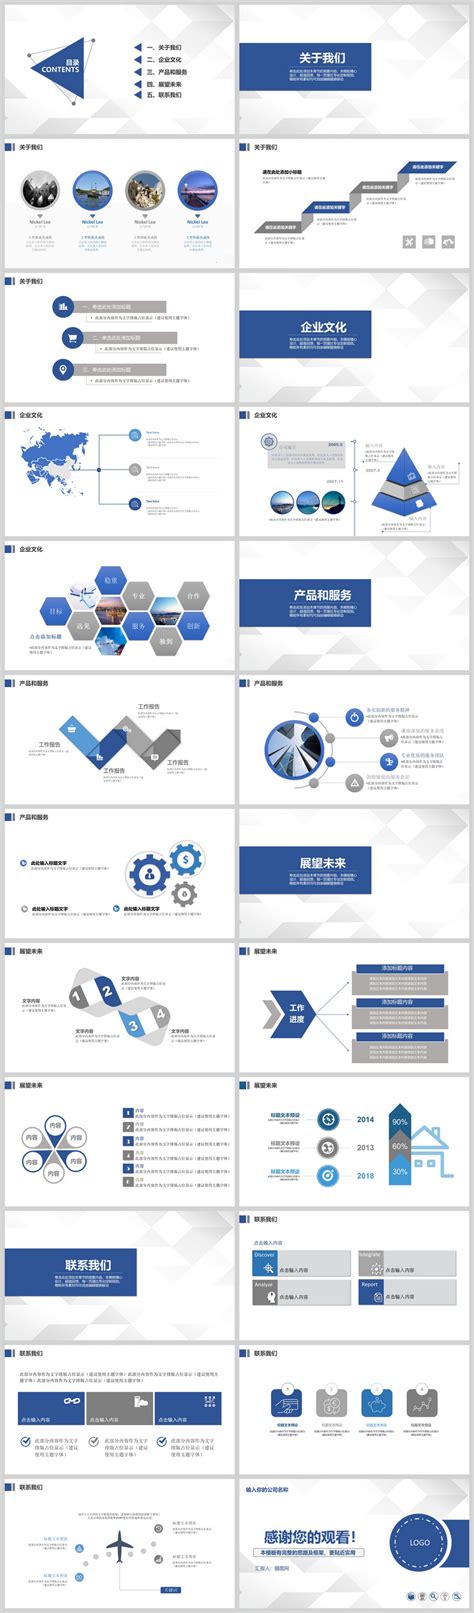 蓝色简约通用市场调查报告模板-PPT模板-图创网